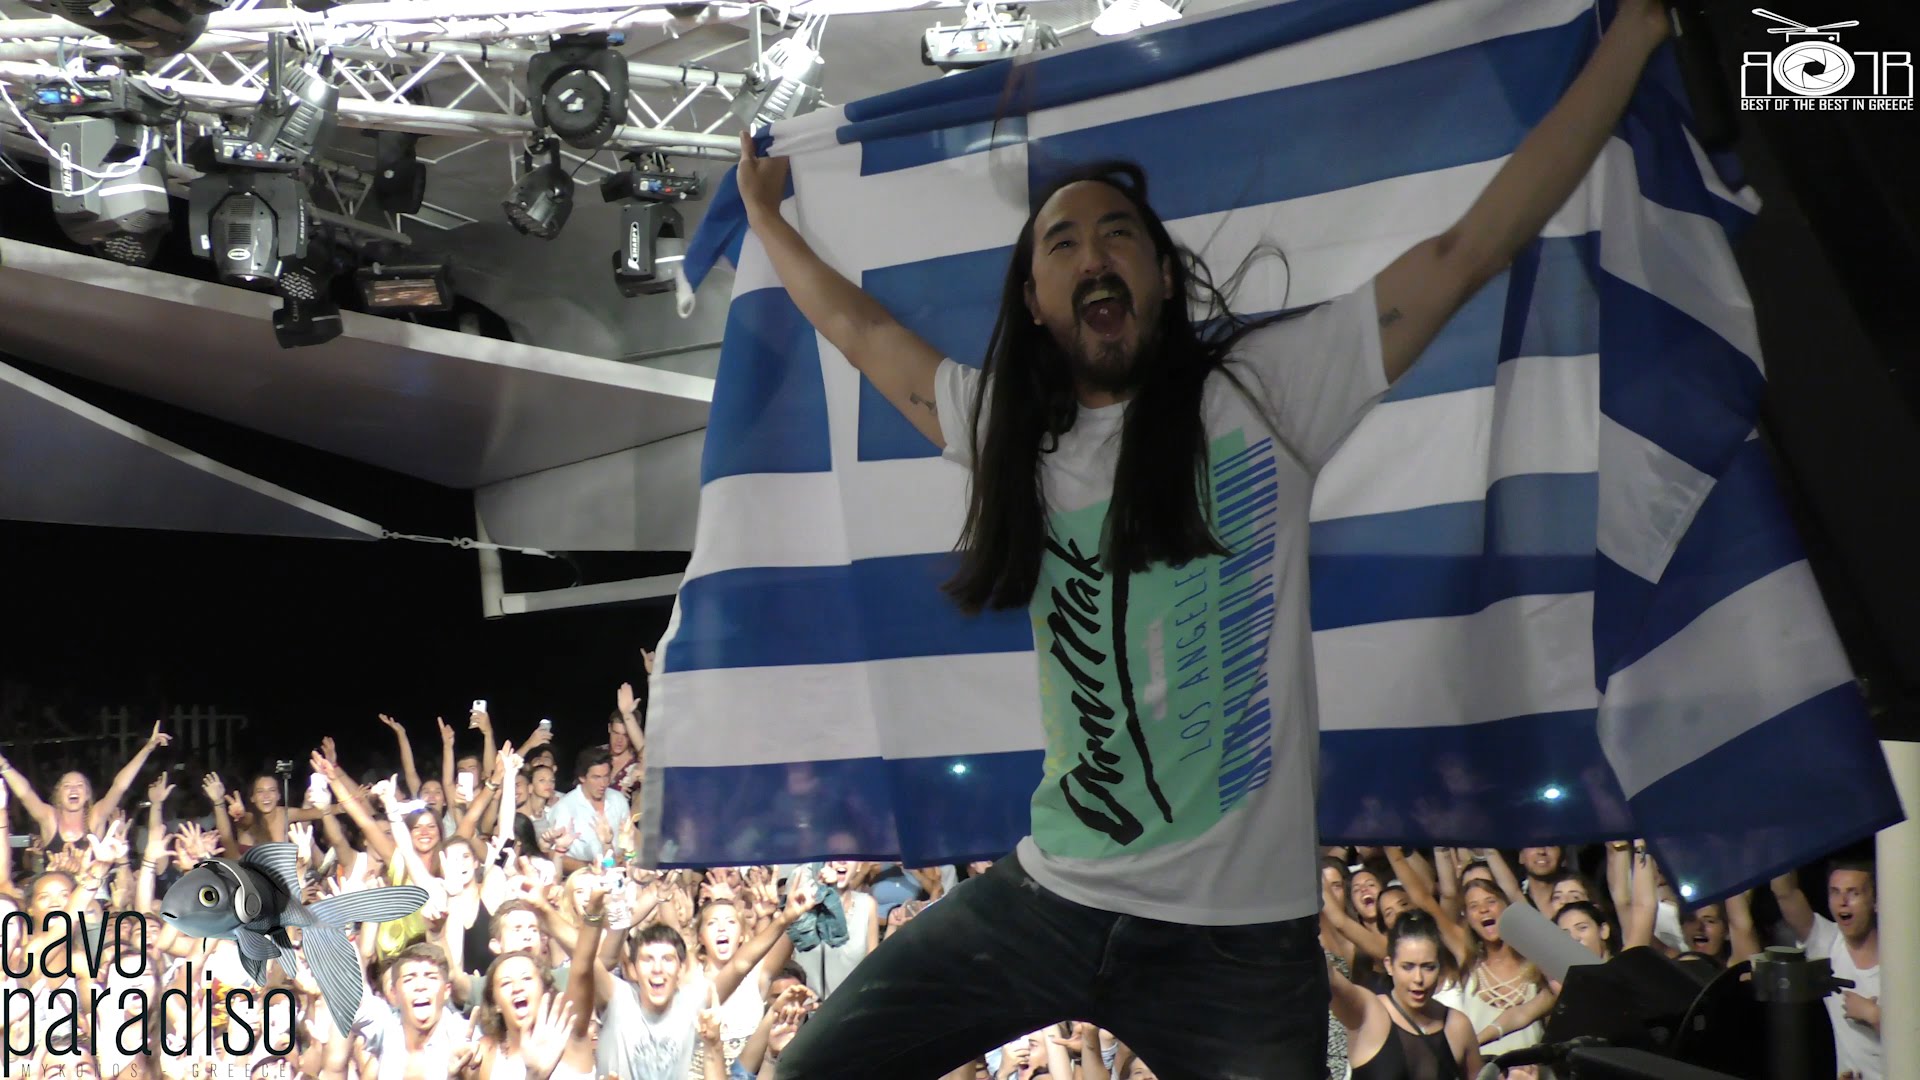 Ο dj Steve Aoki, με τρελό ενθουσιασμό, ανεμίζει την ελληνική σημαία στο Cavo Paradiso της Μυκόνου.